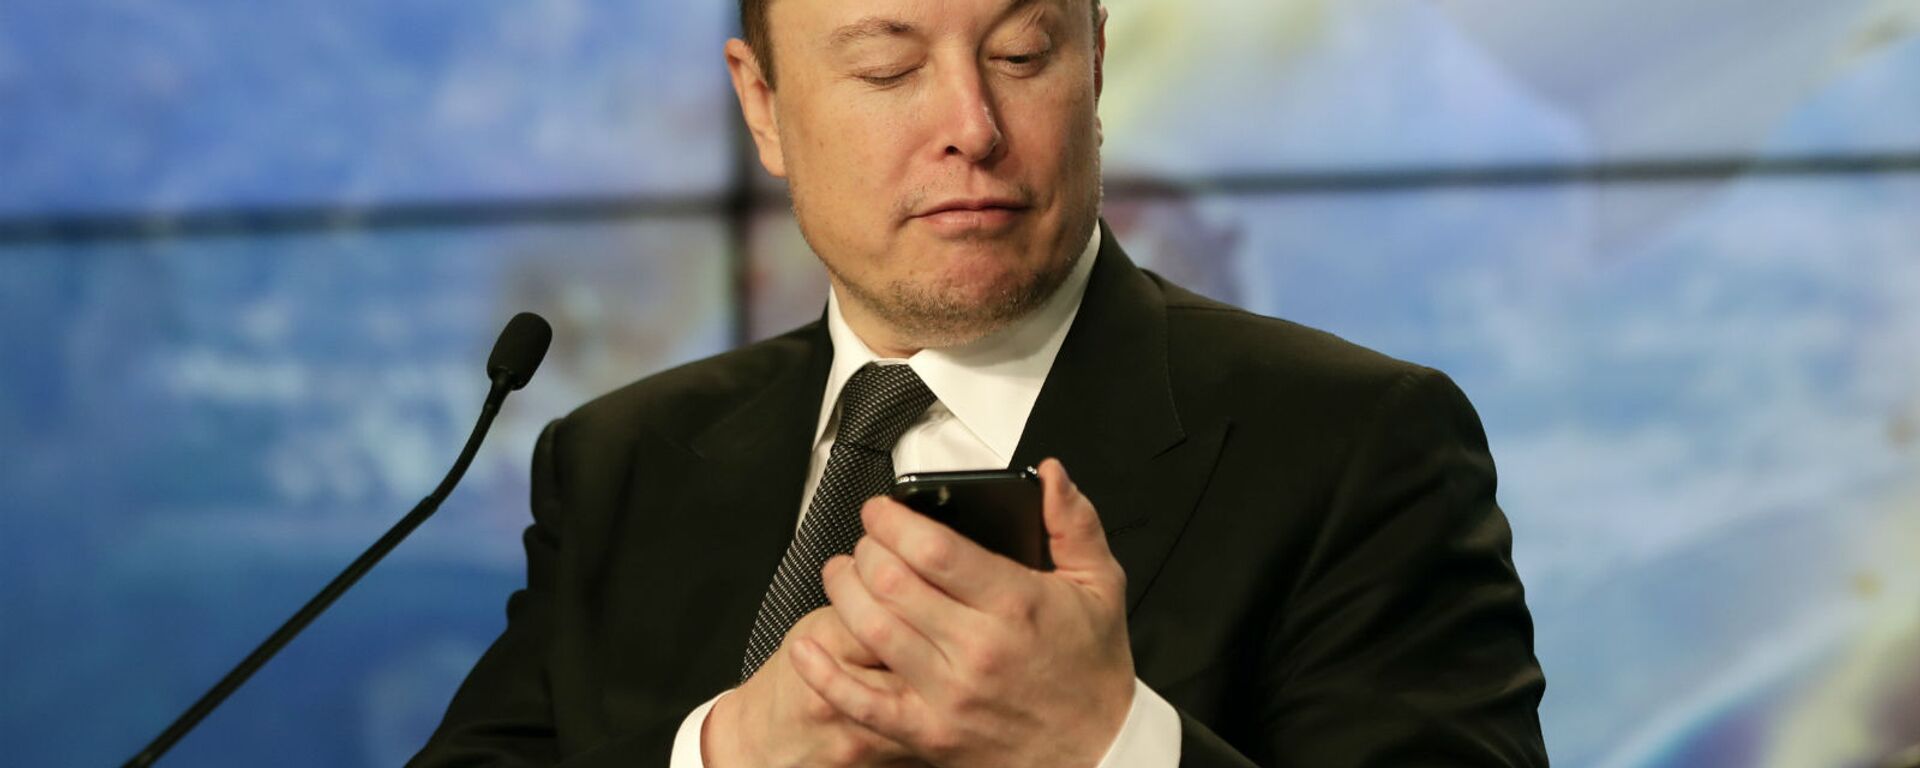 Основатель SpaceX Илон Маск шутит с журналистами, делая вид, что ищет ответ на вопрос по мобильному телефону во время пресс-конференции после испытательного полета ракеты Falcon 9 SpaceX (19 января 2020). Флорида - Sputnik Արմենիա, 1920, 08.04.2021